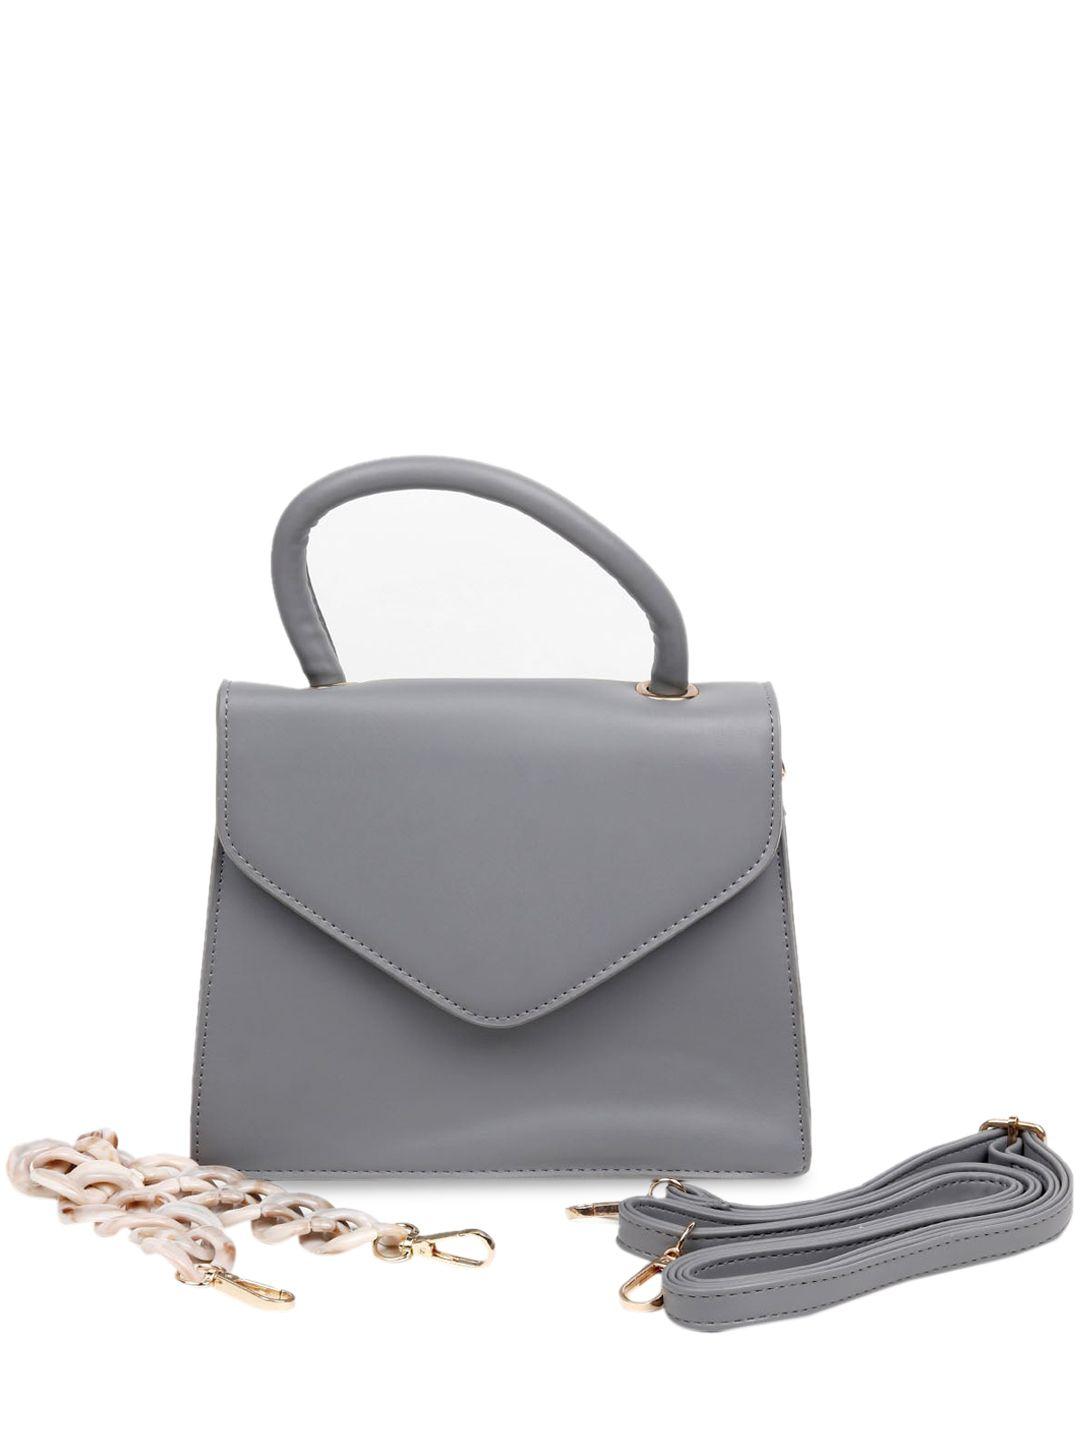 odette women grey structured handheld bag